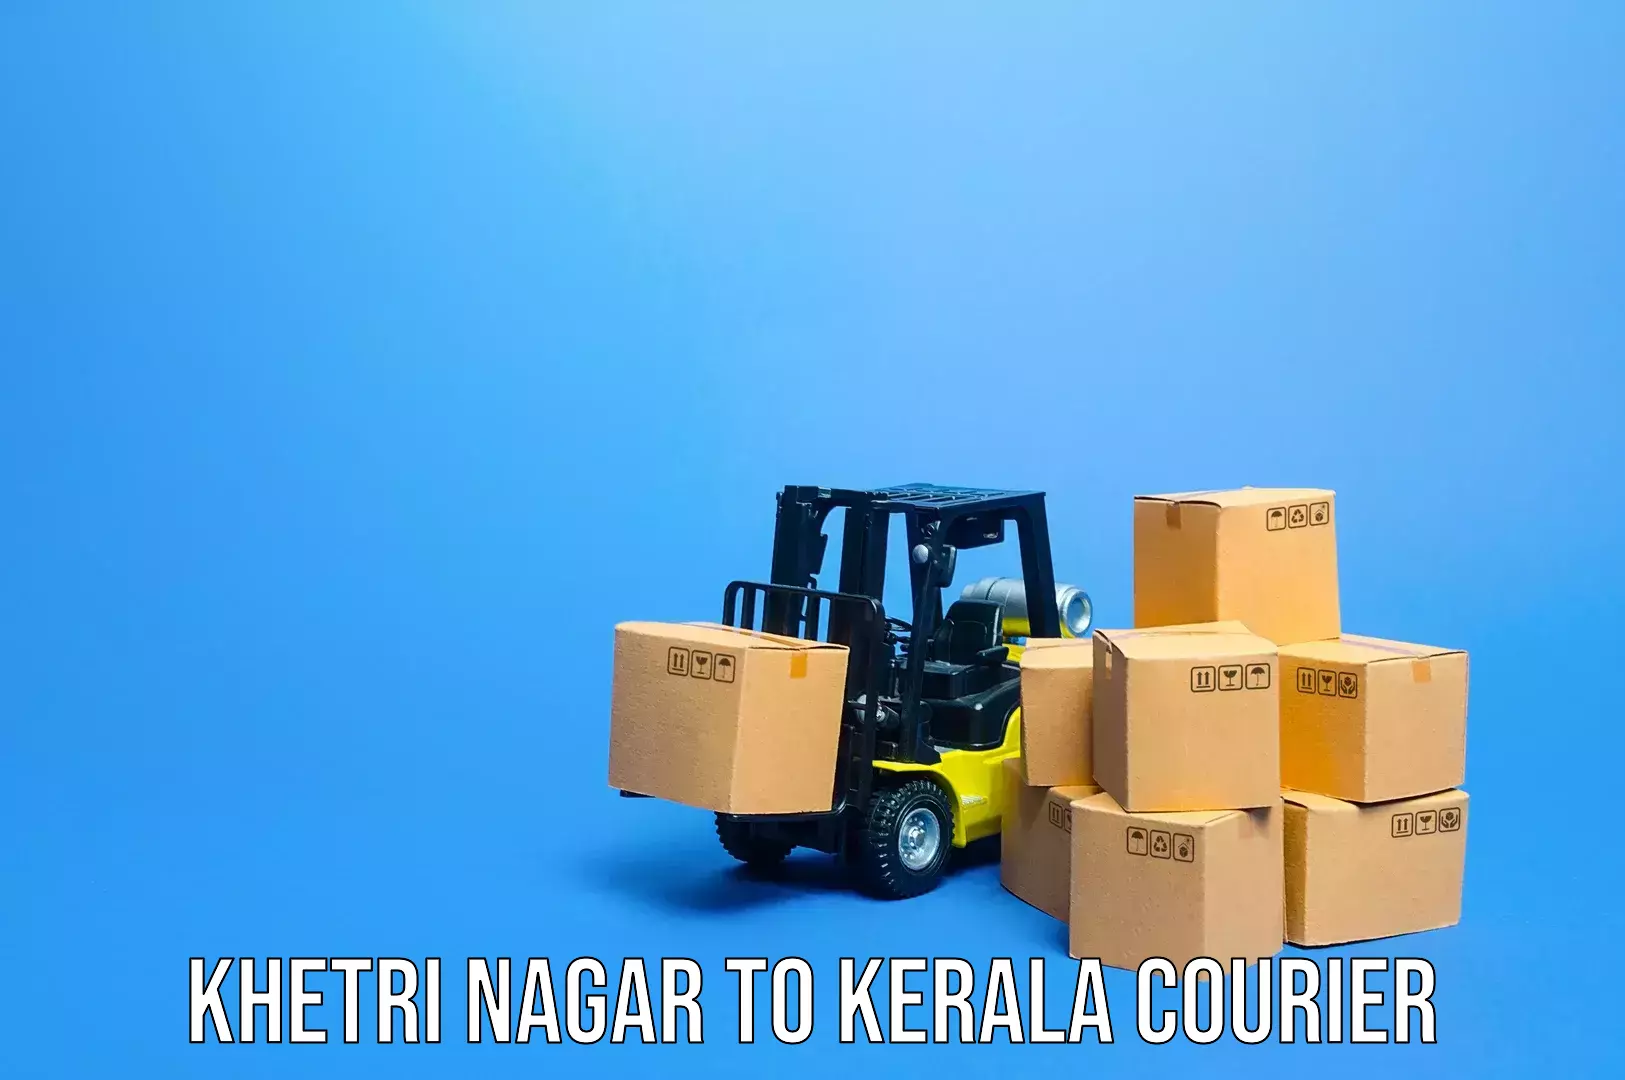 Baggage shipping service Khetri Nagar to Kottayam